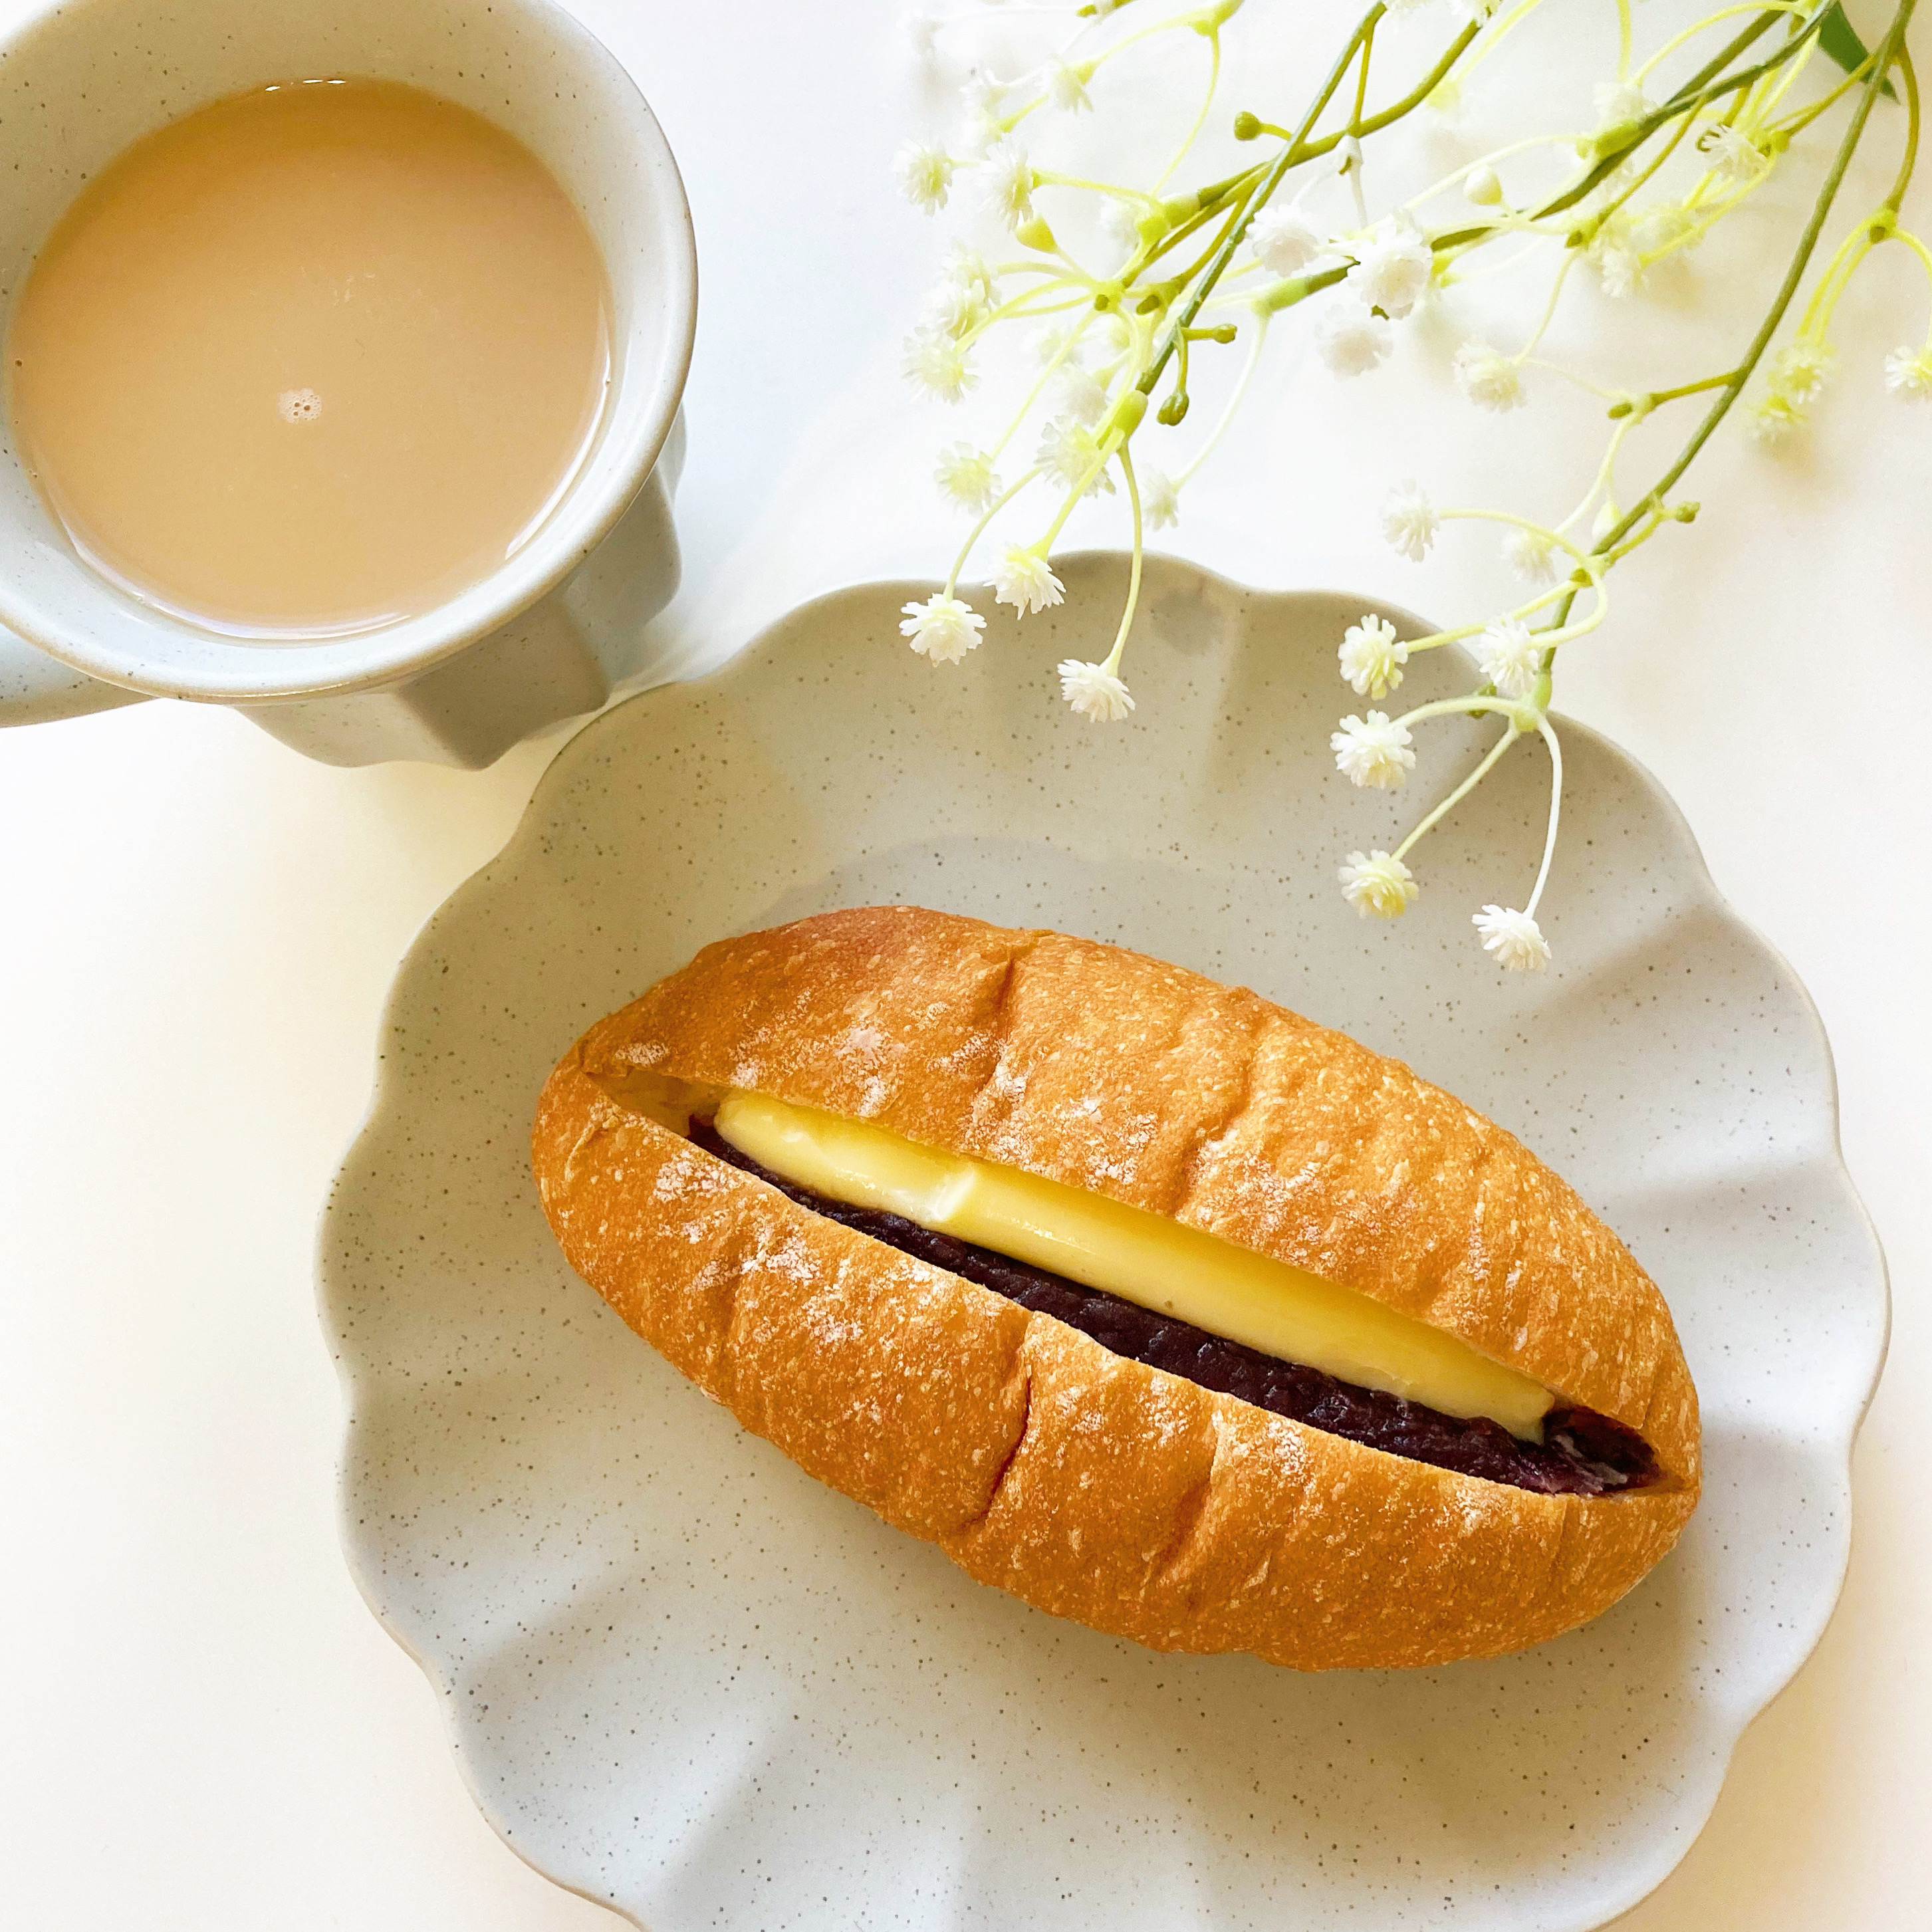 FamilyMart（ファミリーマート）の新商品「生フランスパン（あん＆マーガリン）」